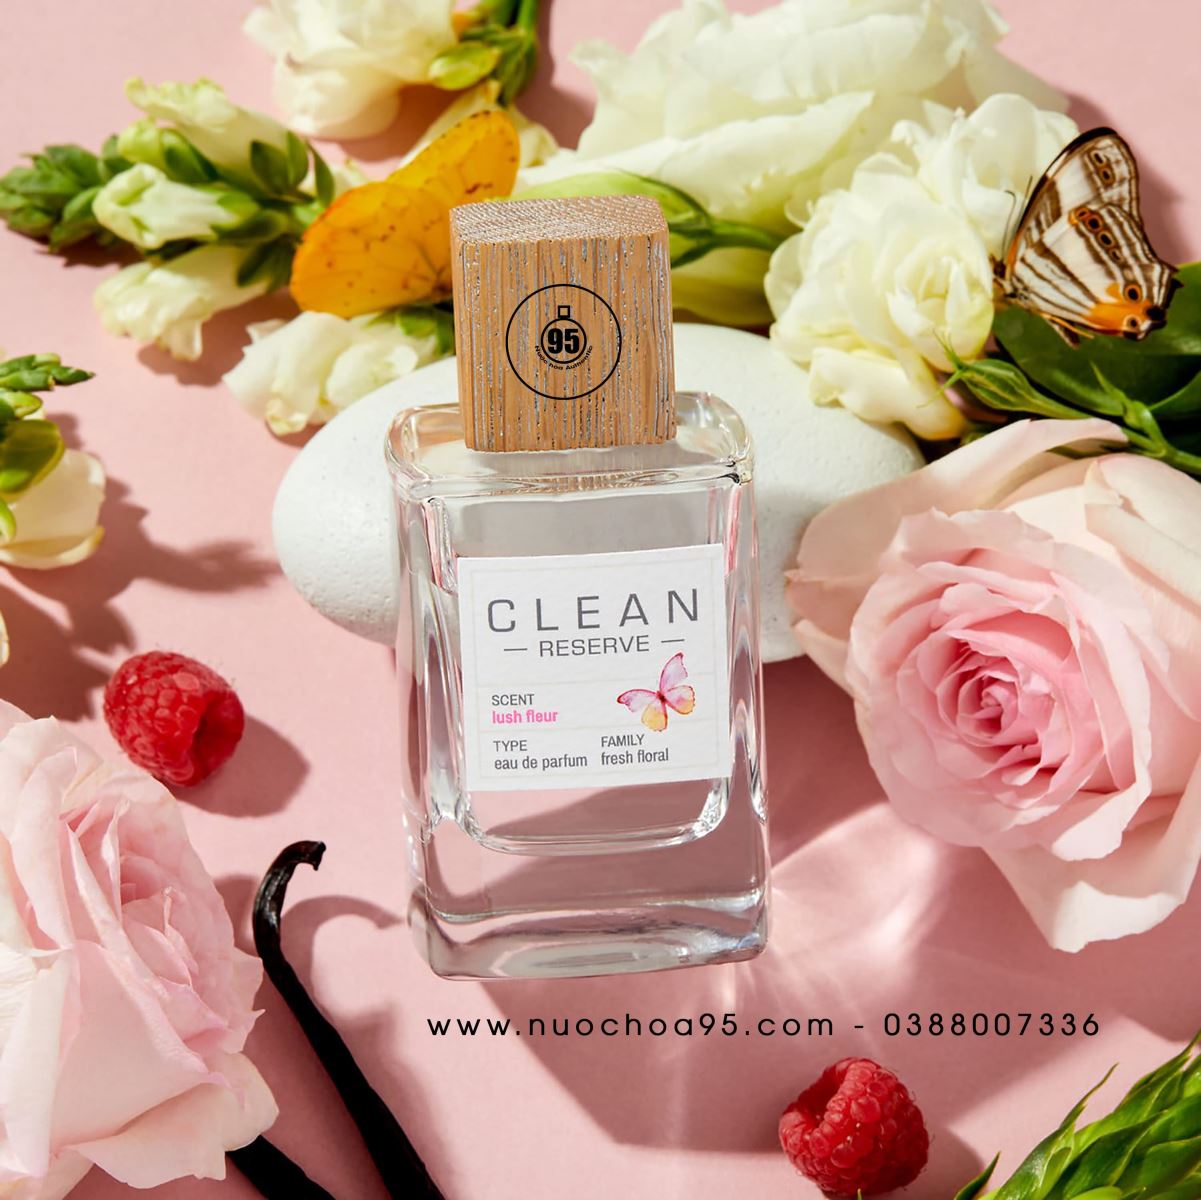 Nước hoa Clean Lush Fleur - Ảnh 1